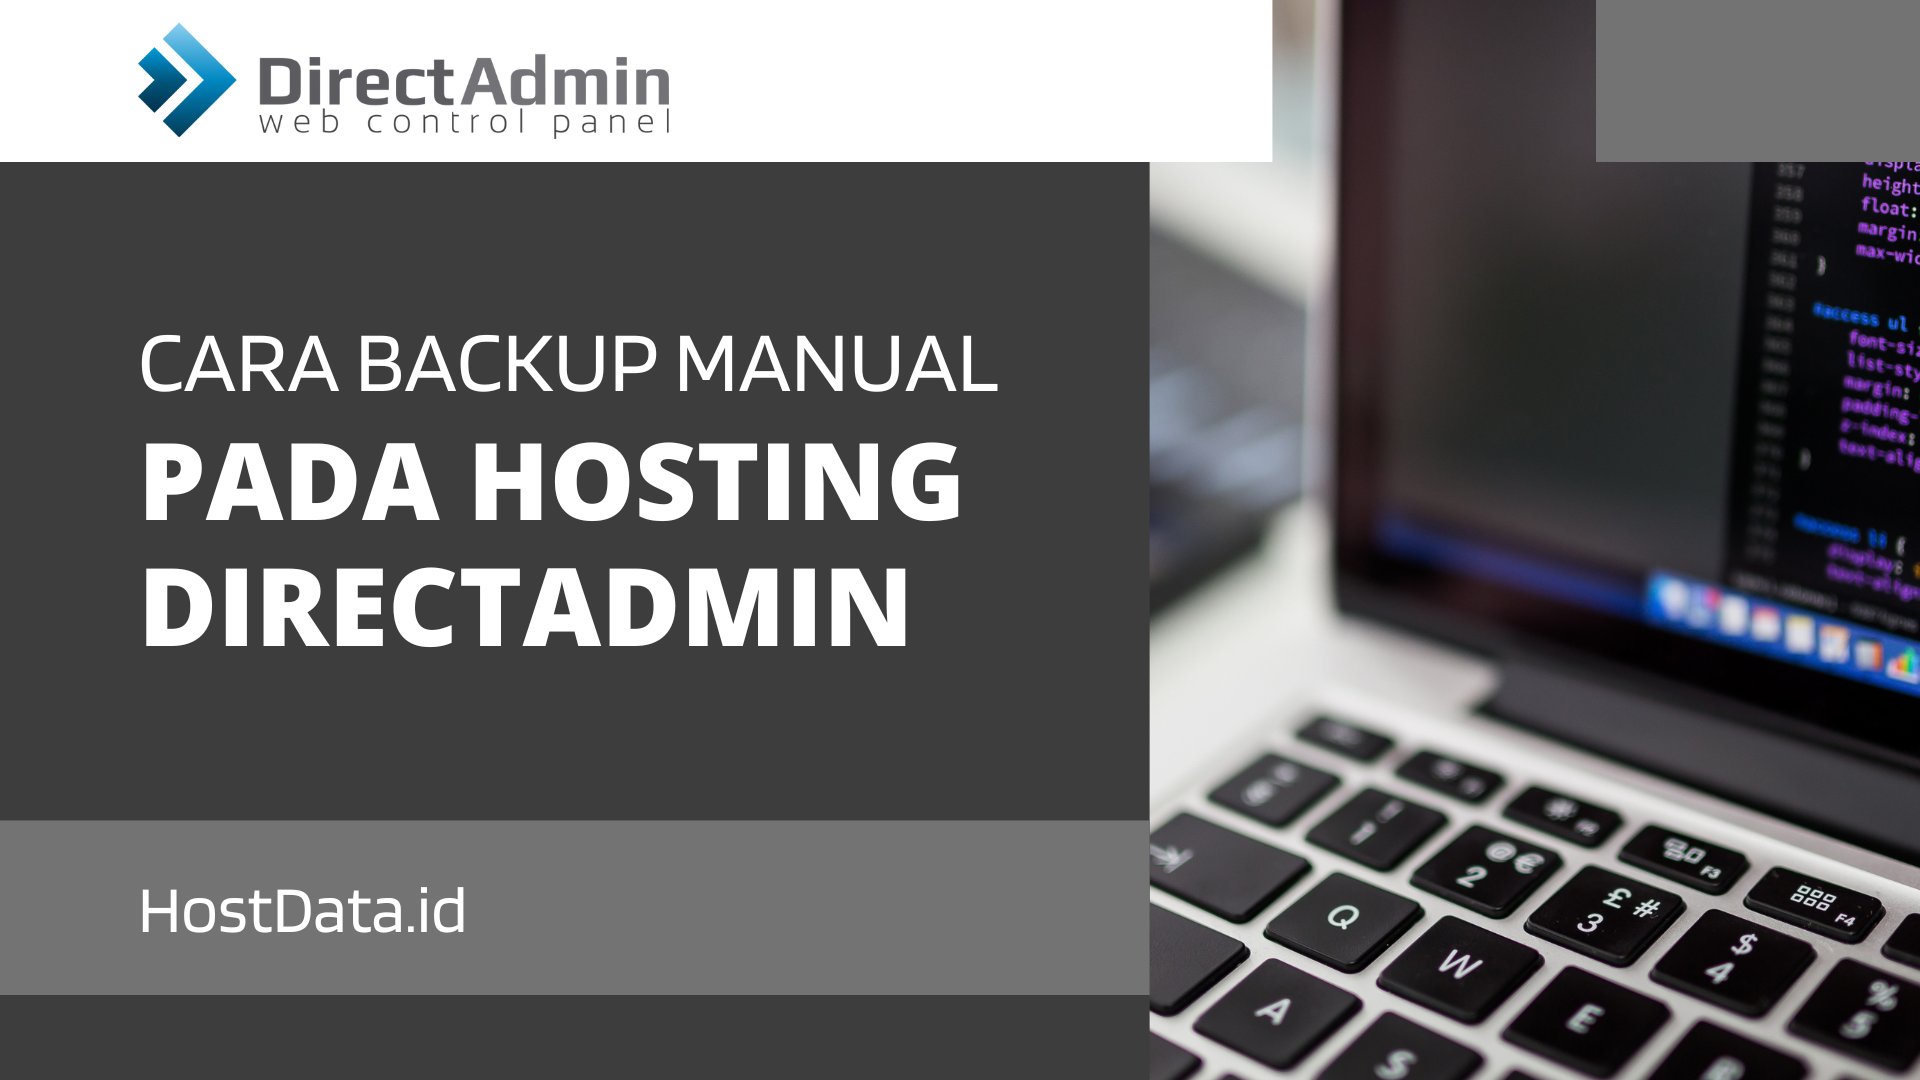 Cara Backup Manual Pada Hosting DirectAdmin